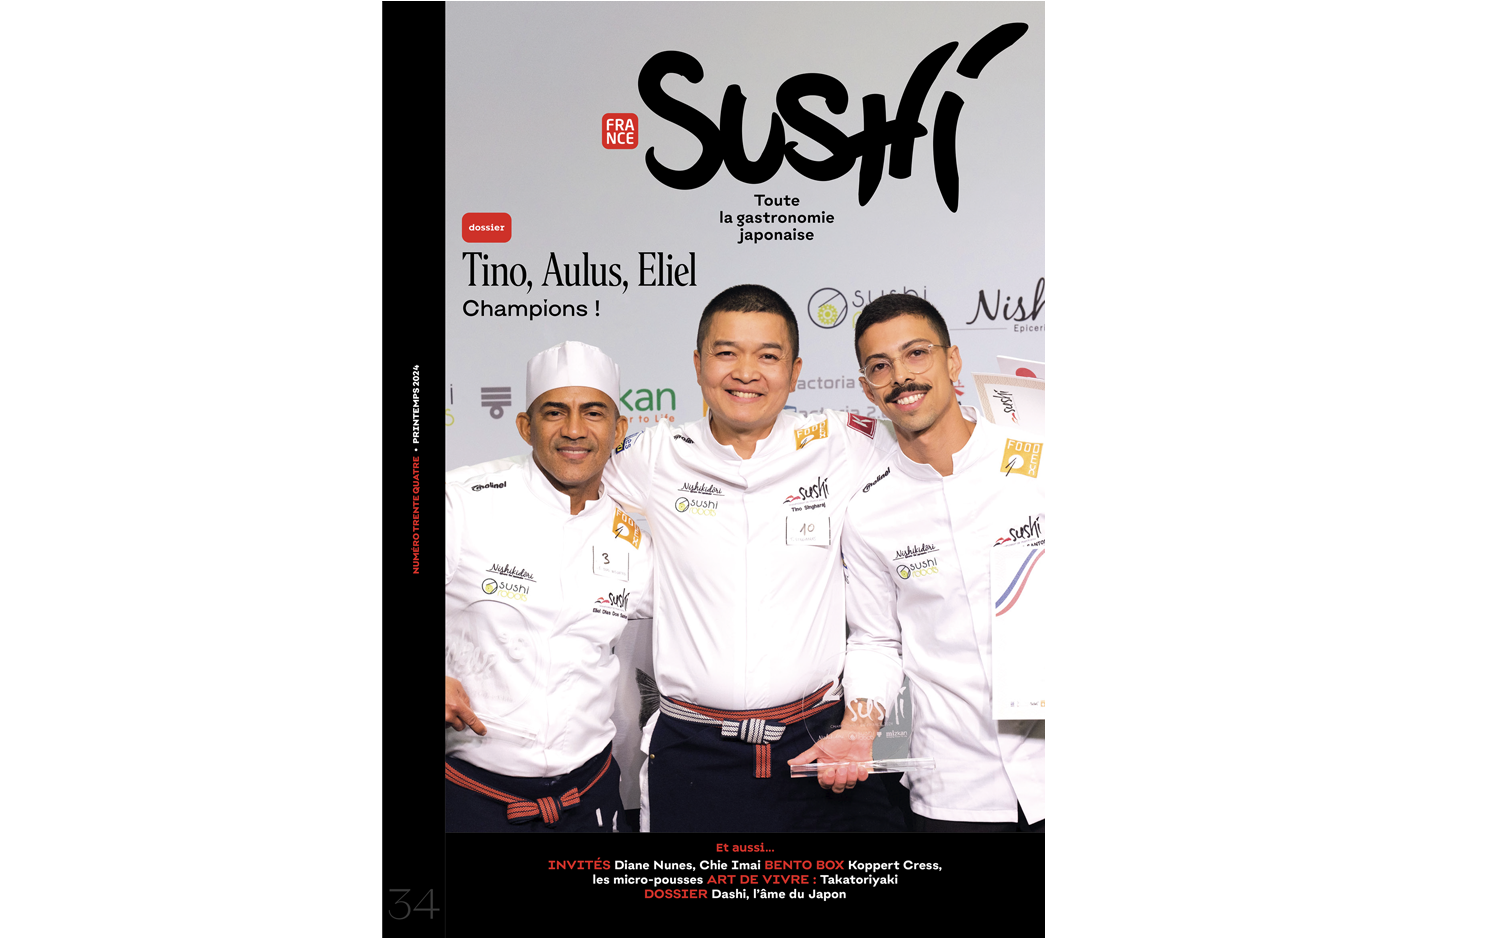 【メディア掲載】「France Sushi Magazine」に淡路島の線香の歴史や取り組みが掲載されました。